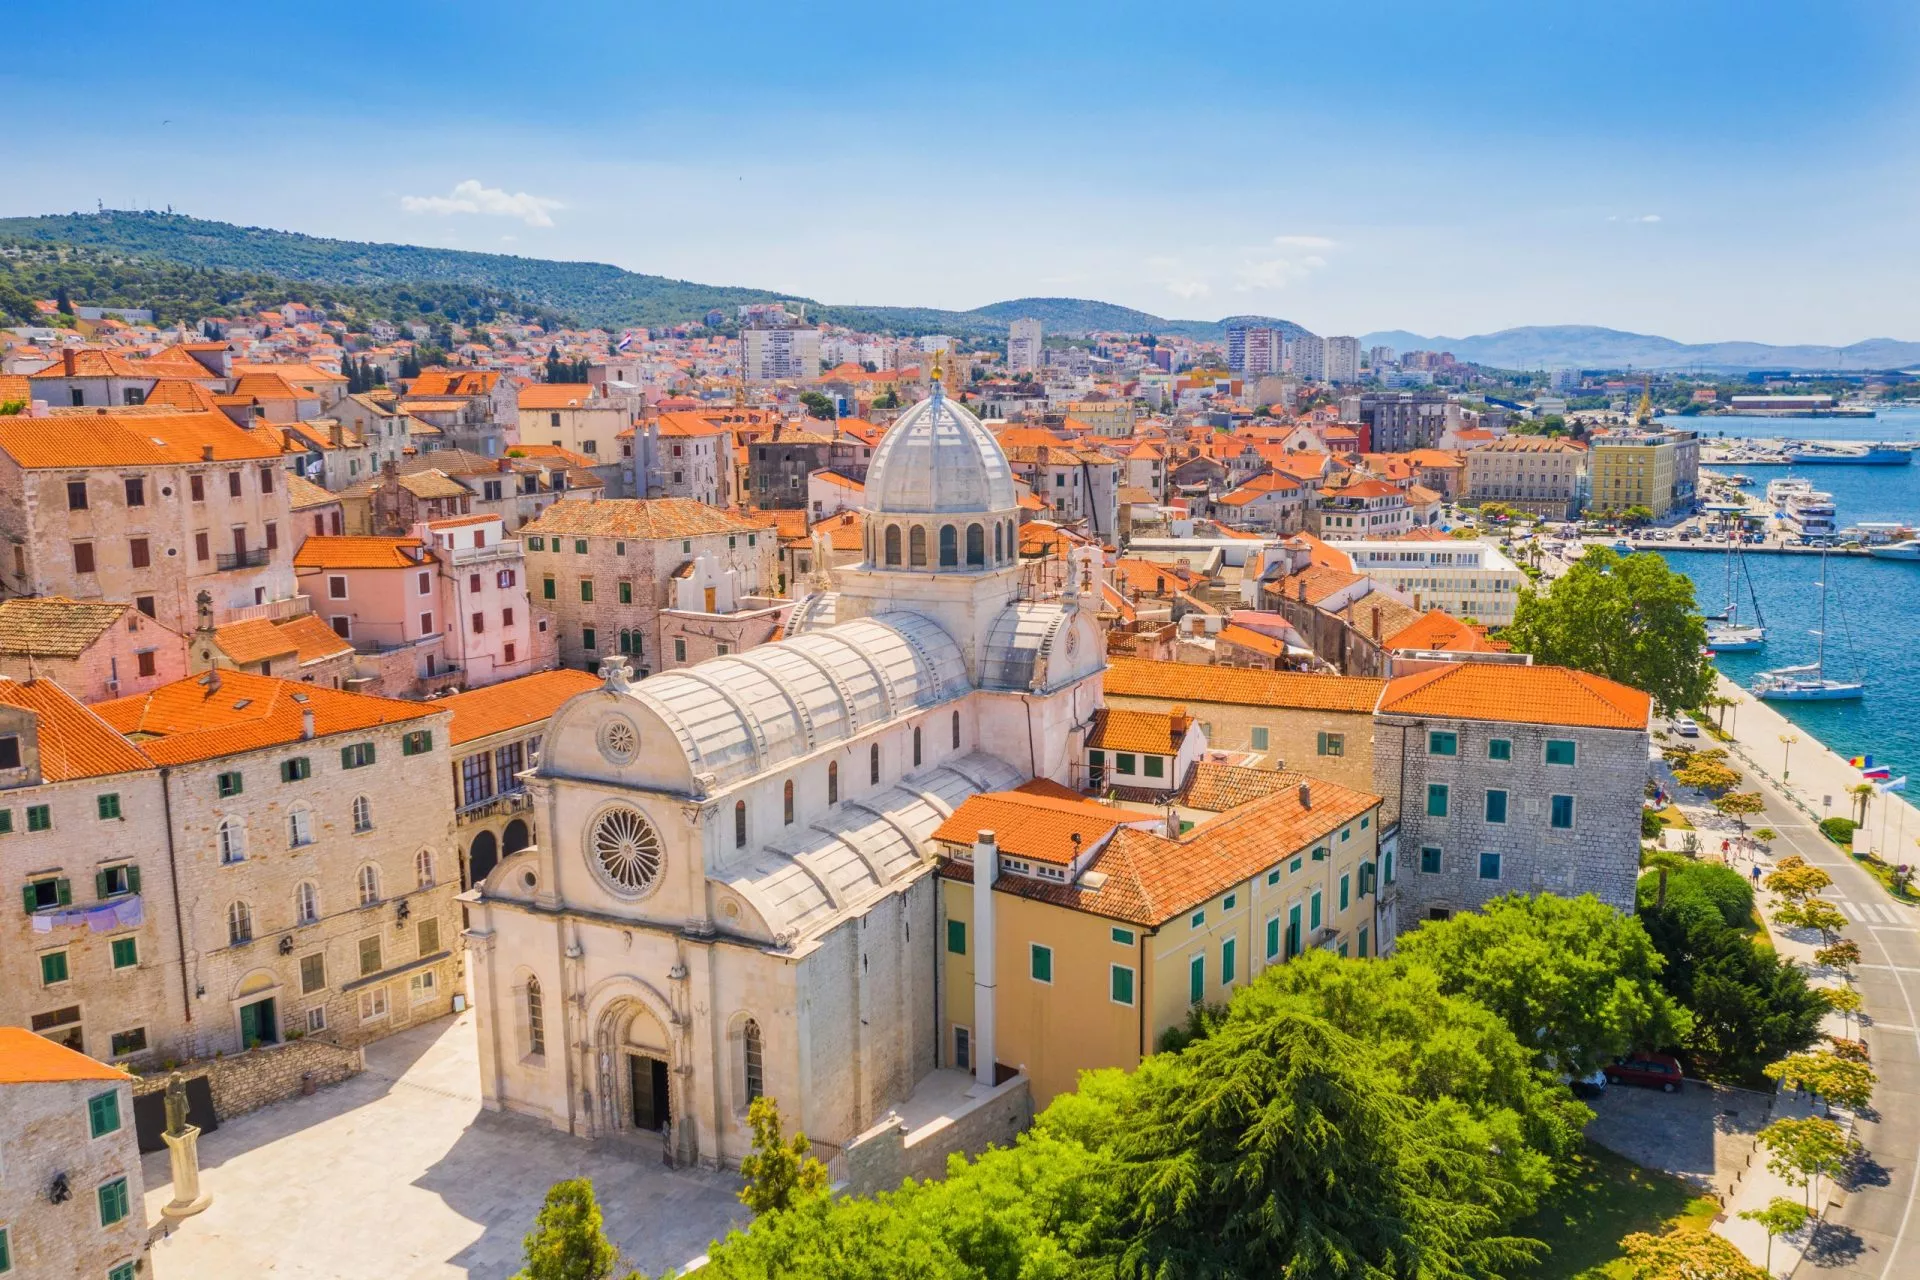 Croazia, città di Sibenik, vista panoramica del centro storico e della cattedrale di San Giacomo, il più importante monumento architettonico dell'epoca rinascimentale in Croazia, Patrimonio dell'Umanità UNESCO